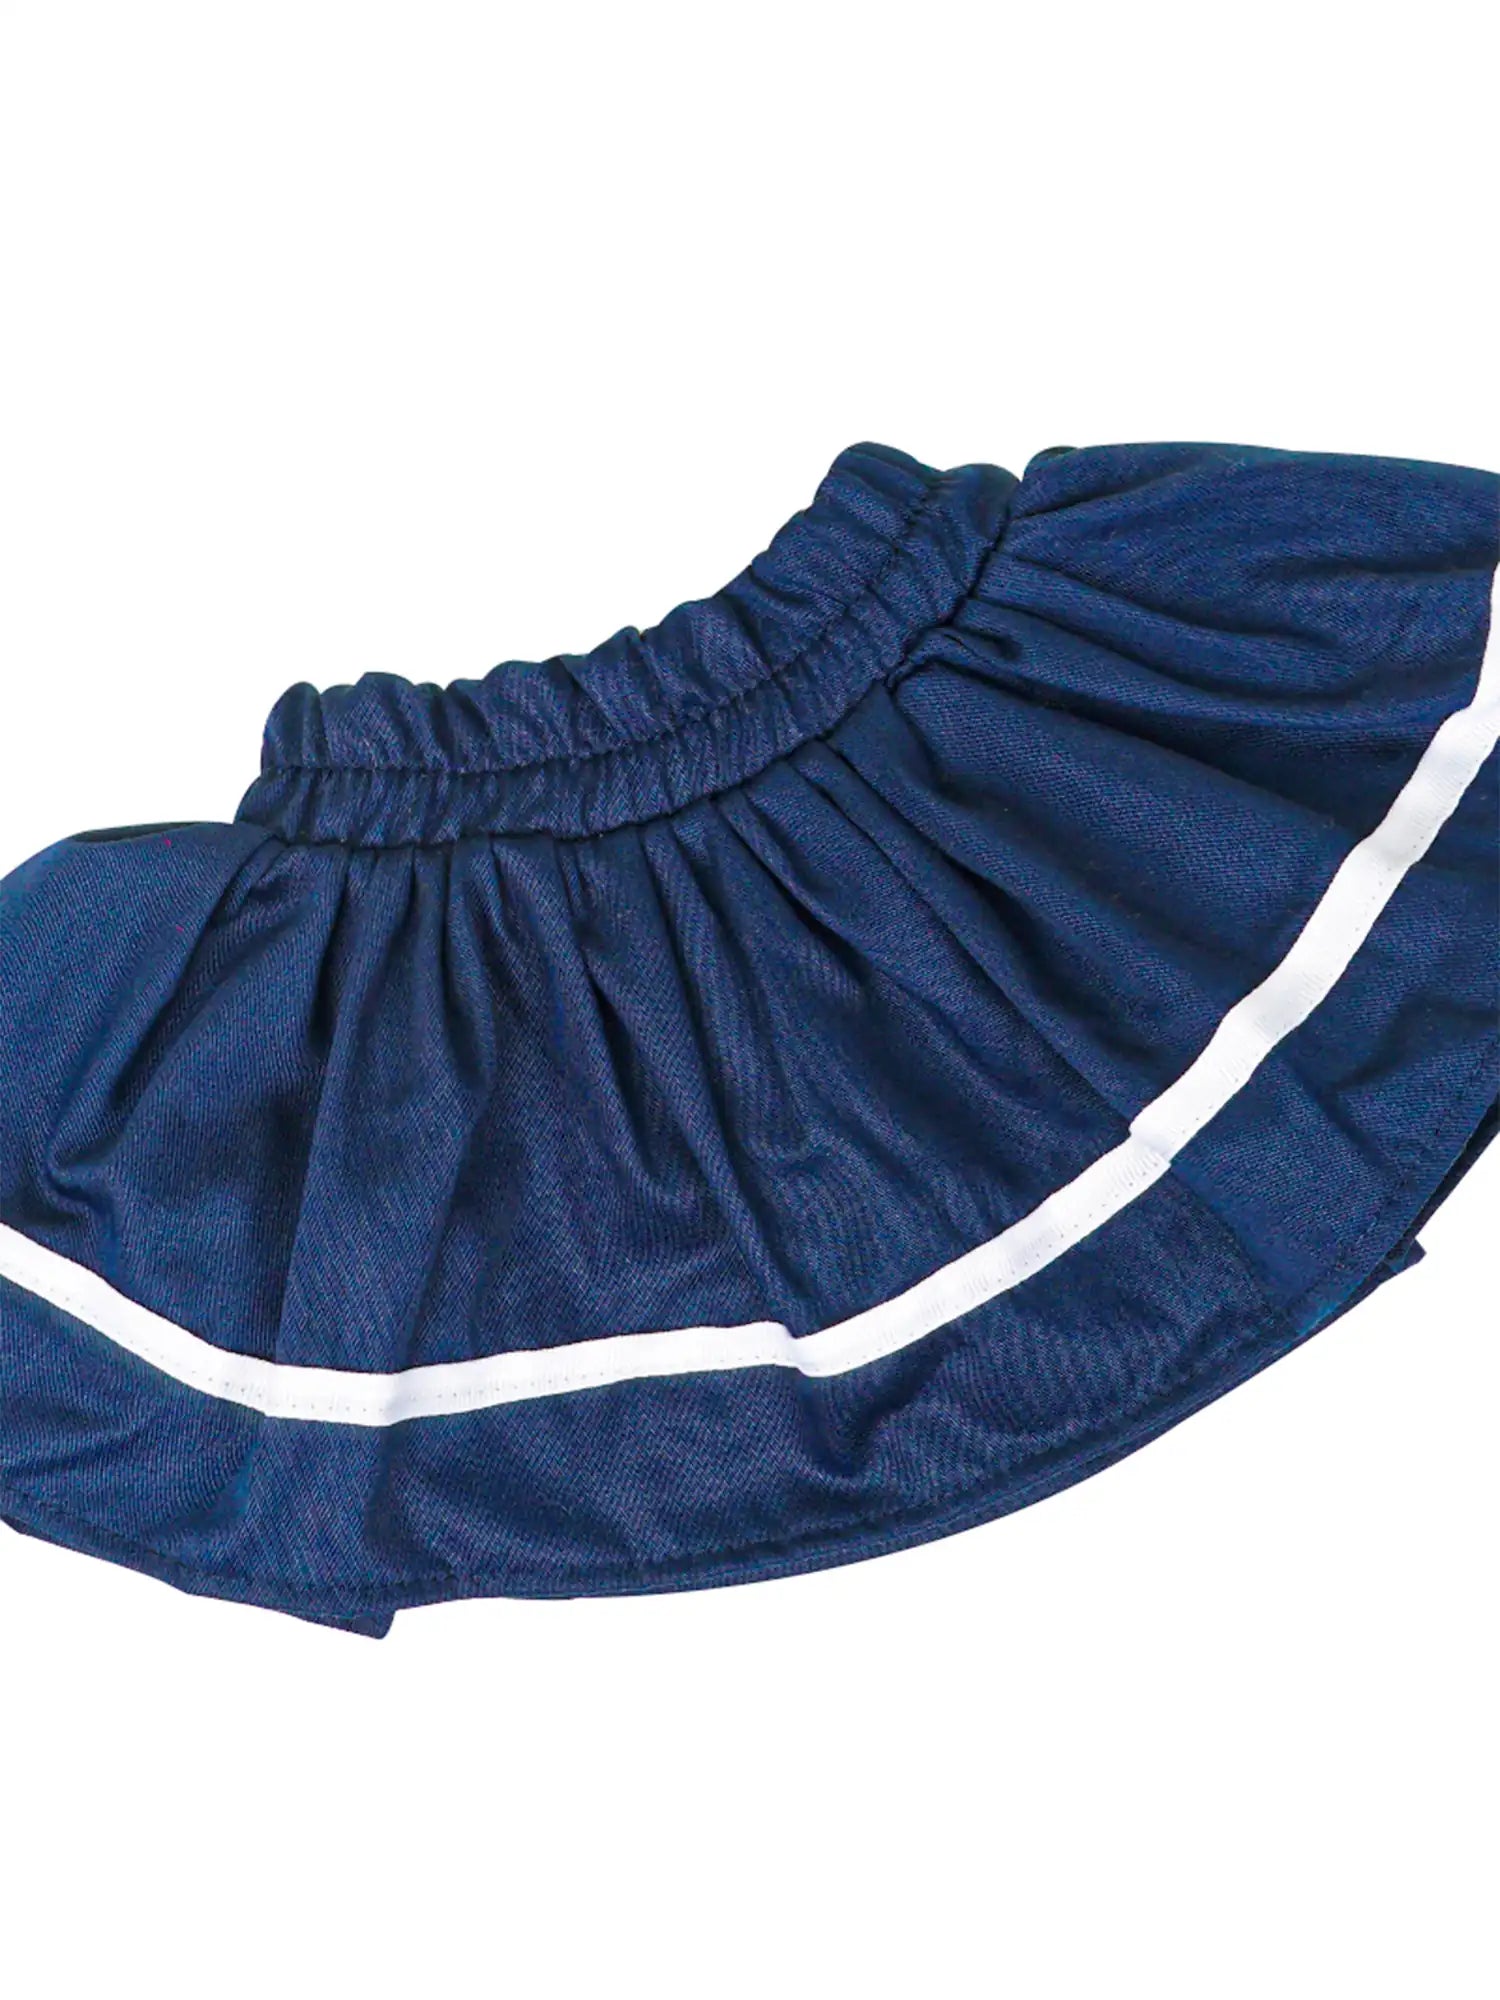 dark blue skirt